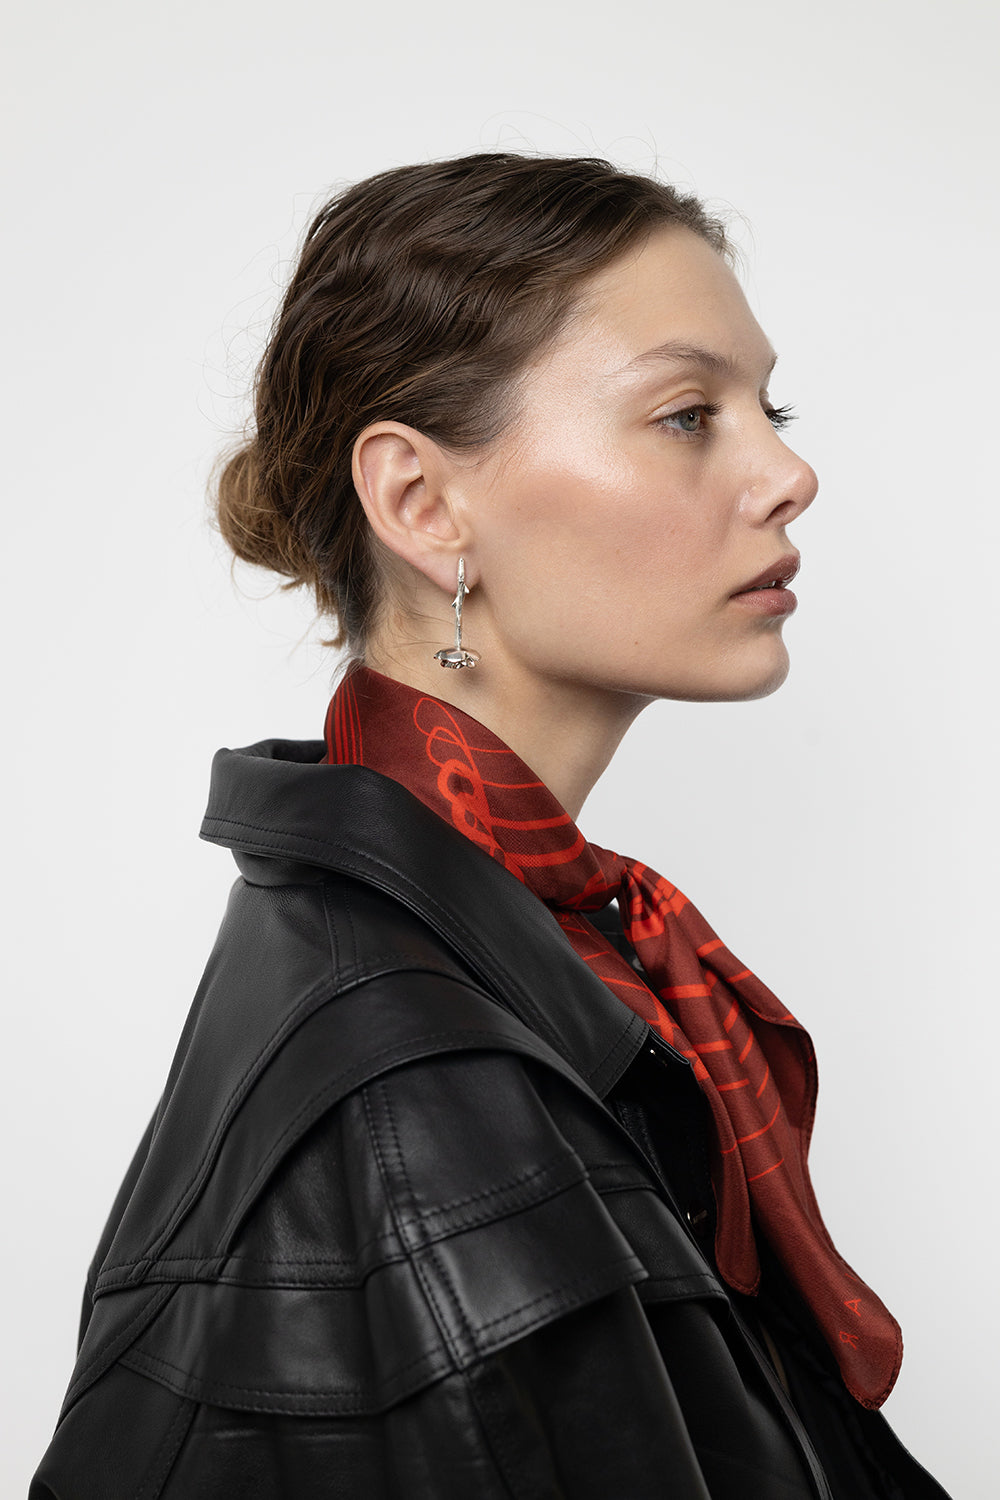 FLOS rose earrings